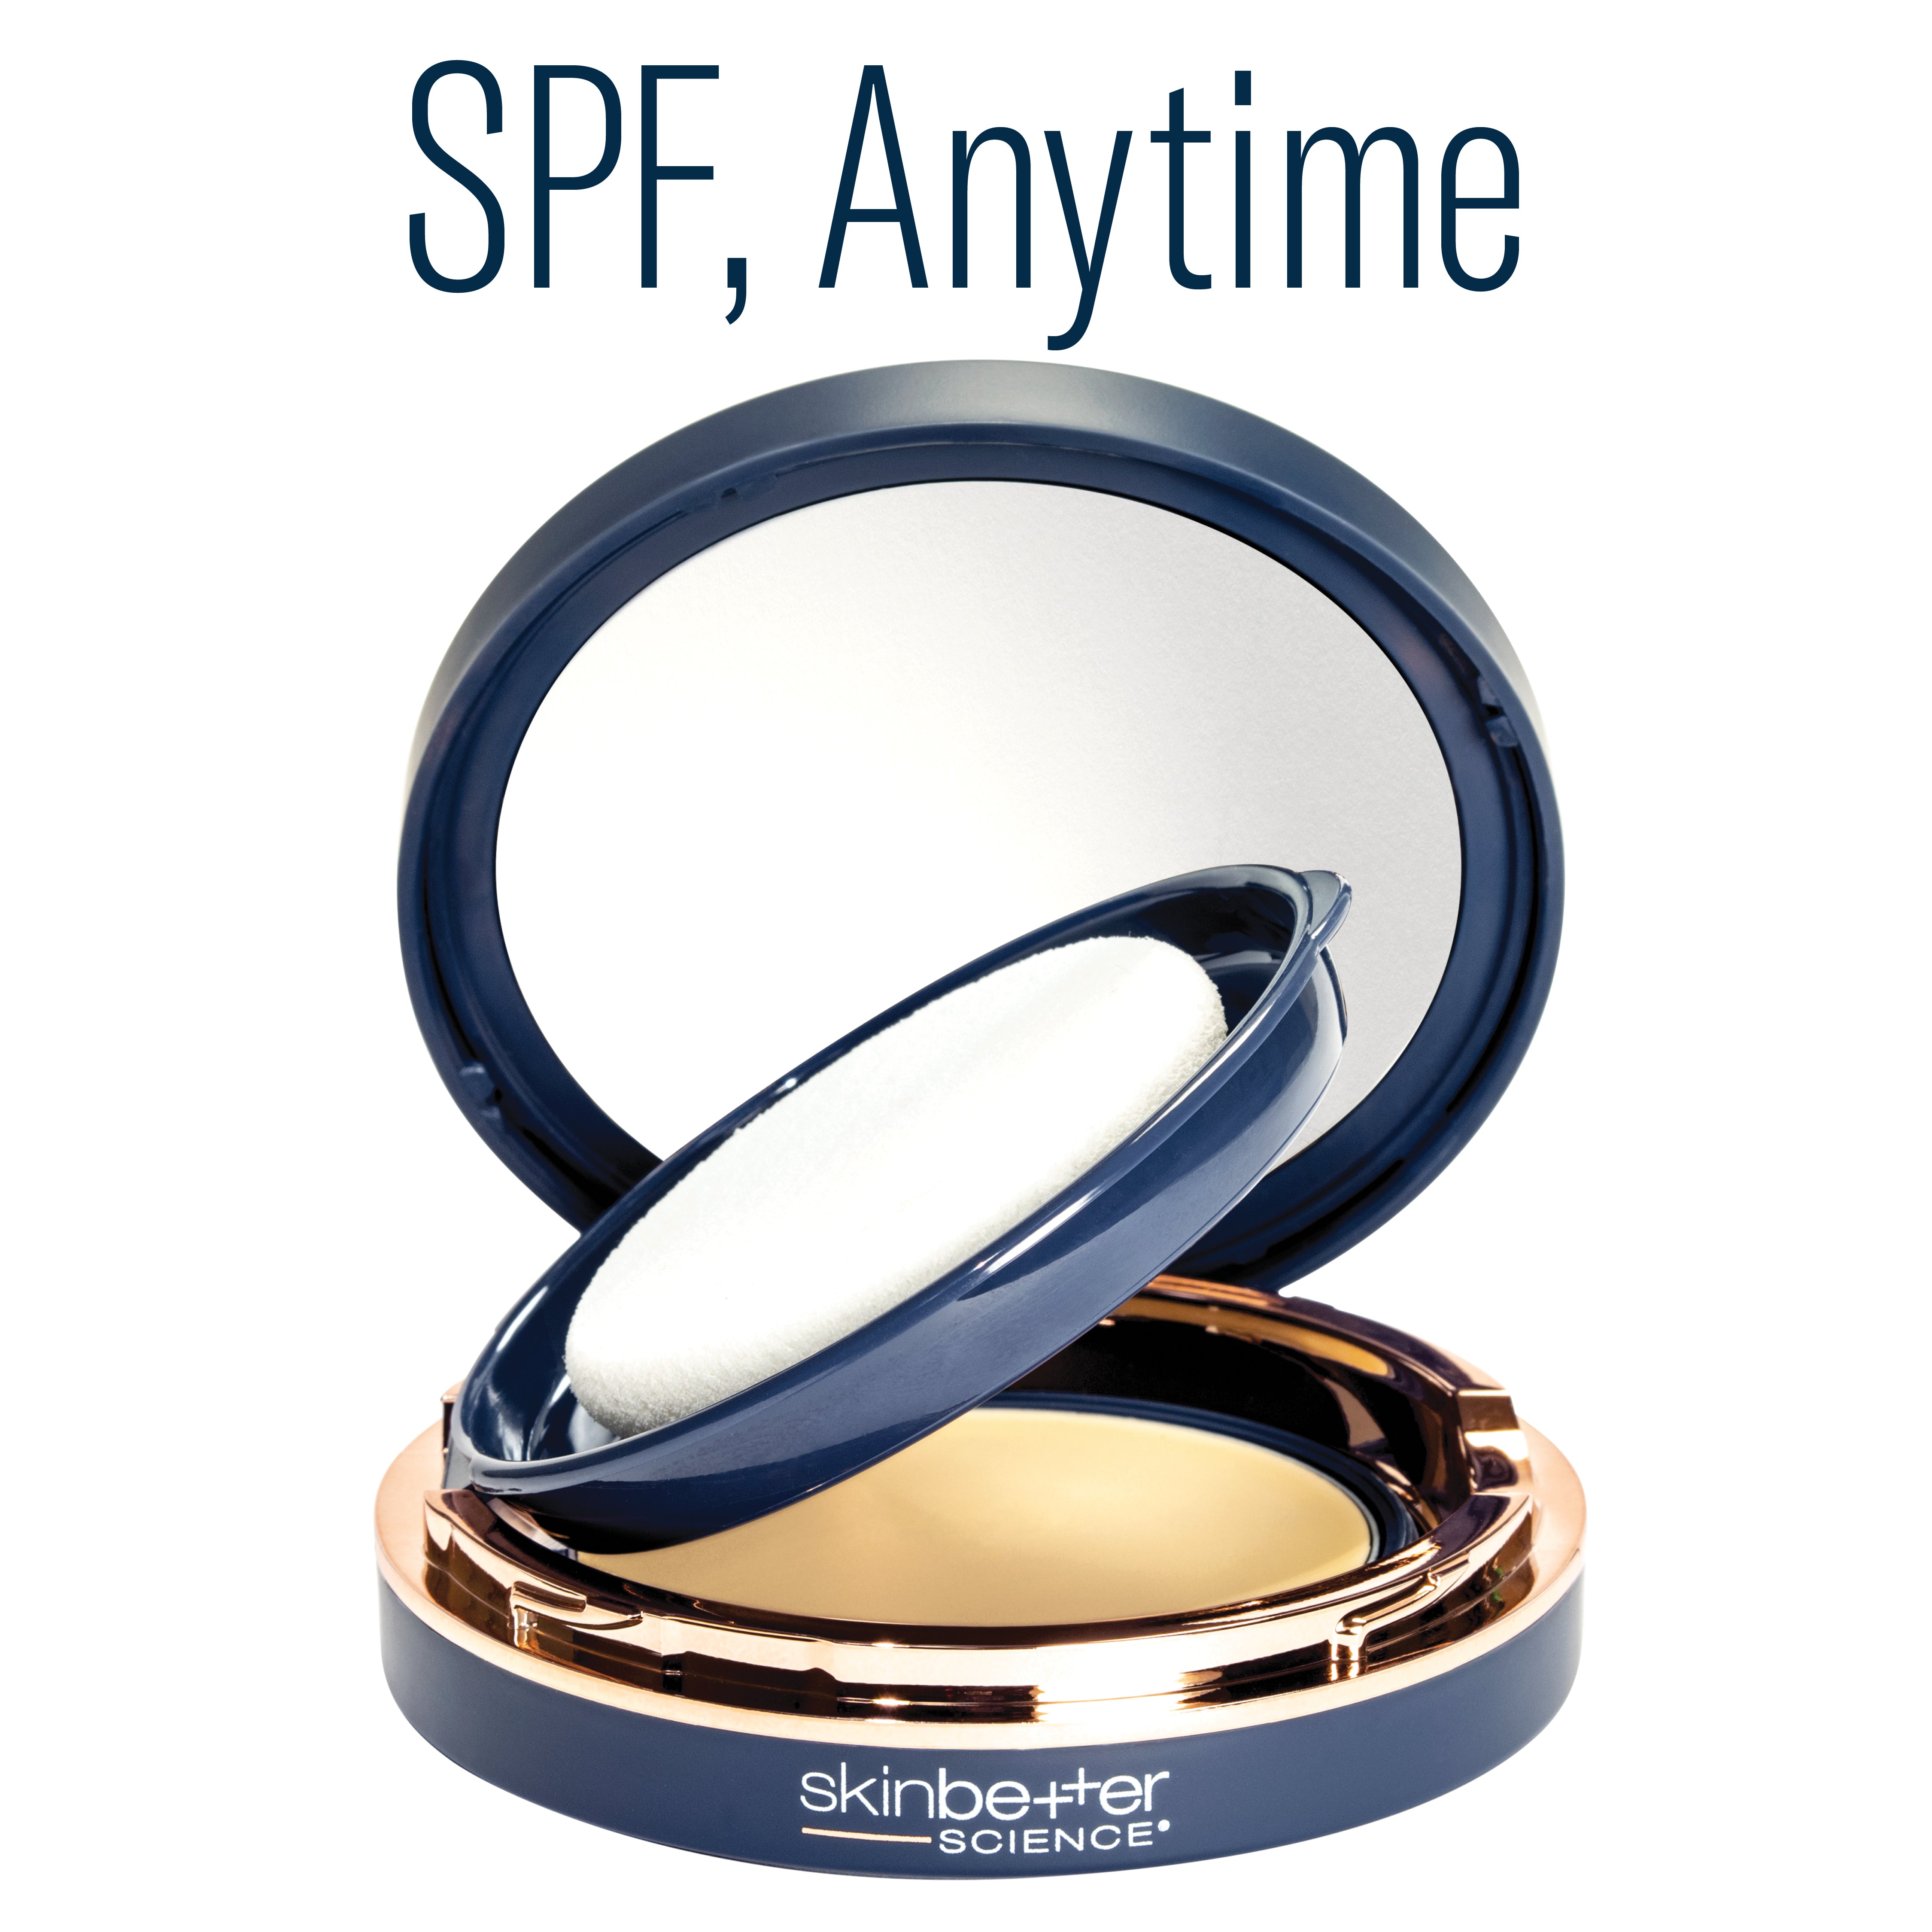 Skinbetter Science | Sunbetter Tone Smart SPF 50 Sunscreen Compact (12g)